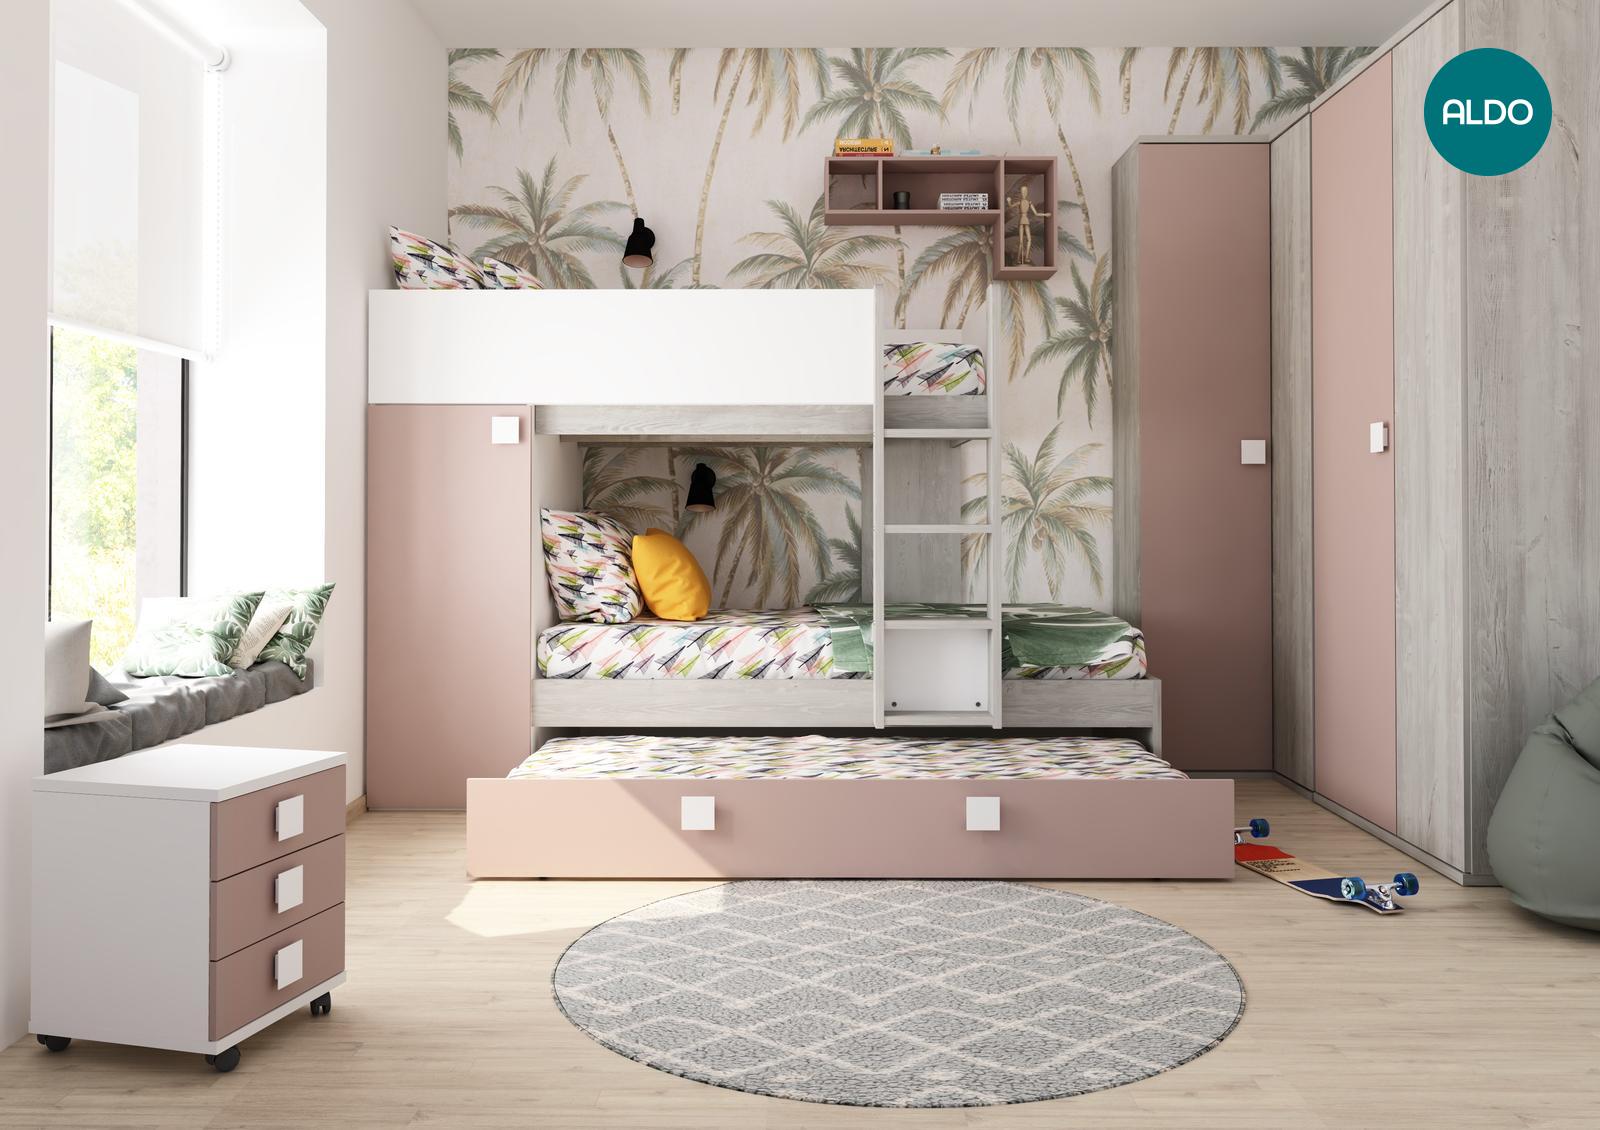 Pokój dziecięcy dla trzech dziewczynek - kolekcja Bo7 pink, white, oak